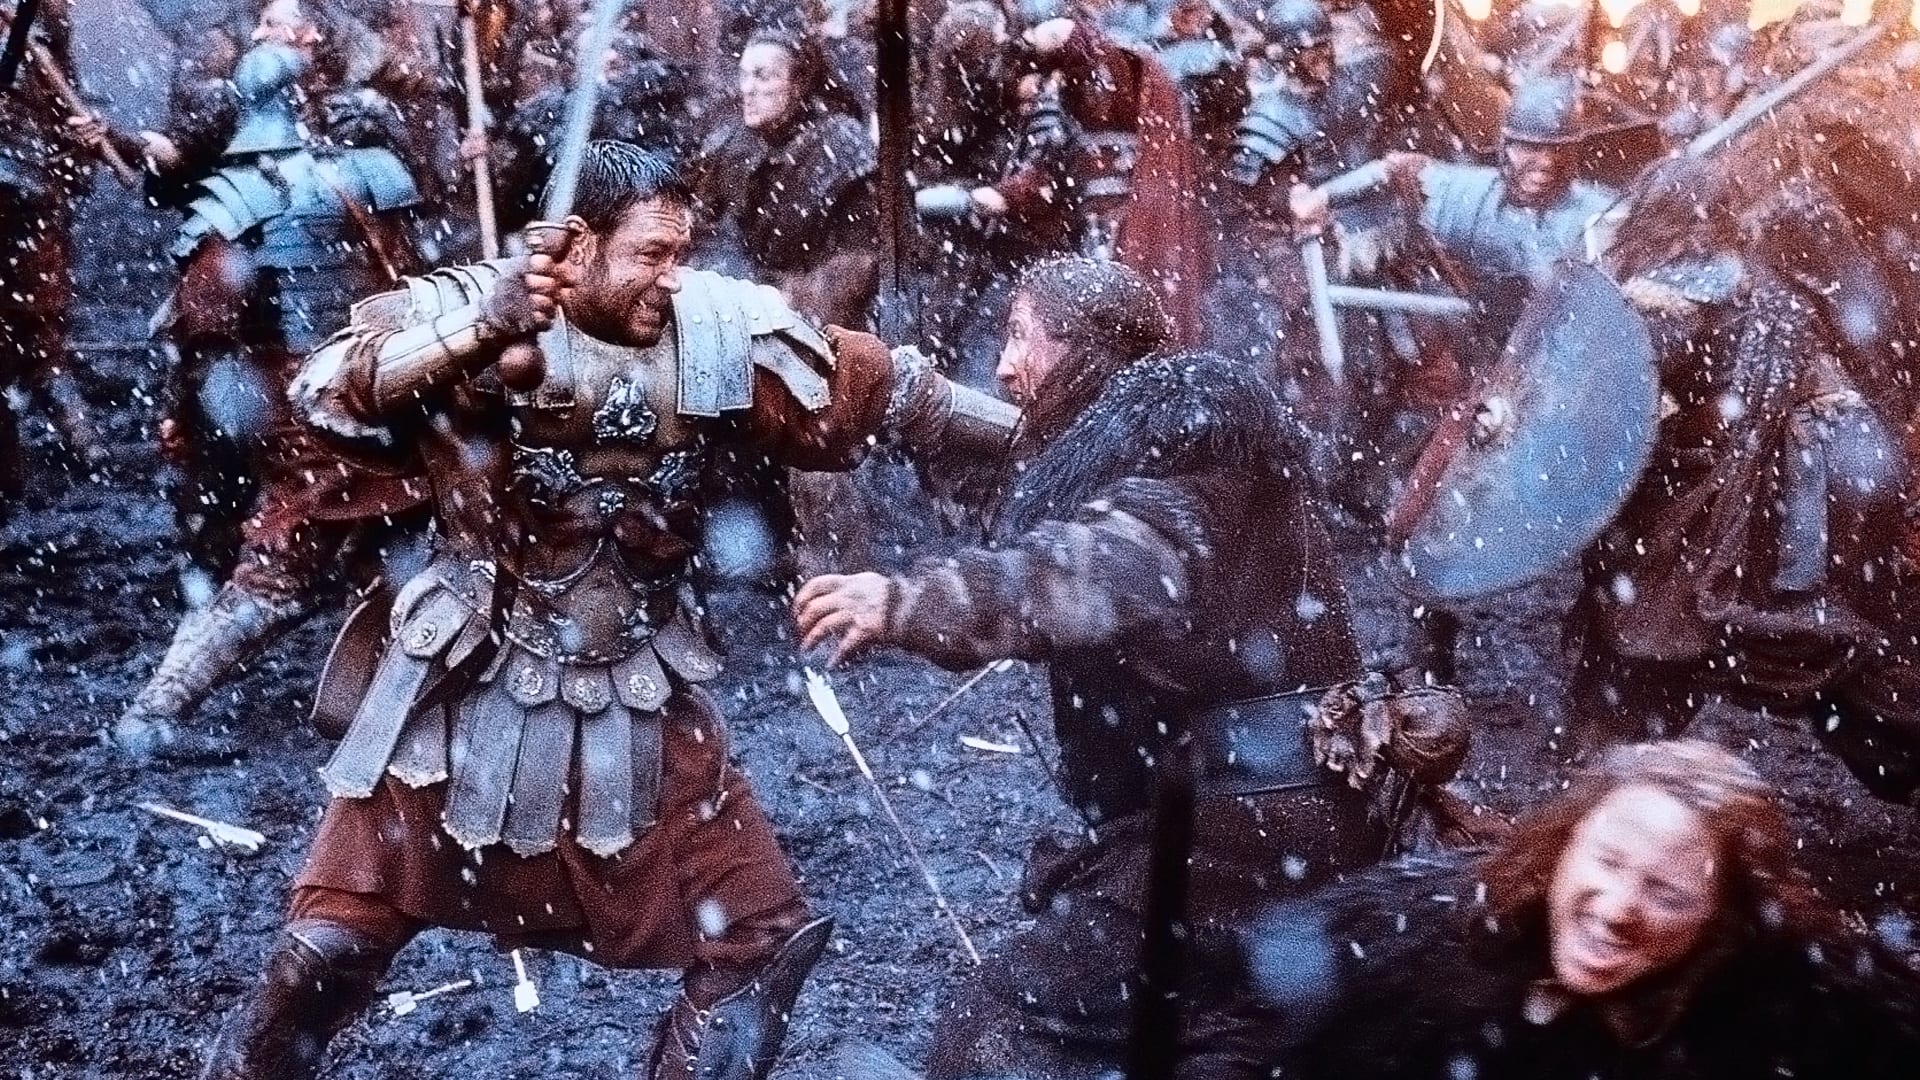 O římské aroganci během bitev vypovídal i snímek Gladiátor